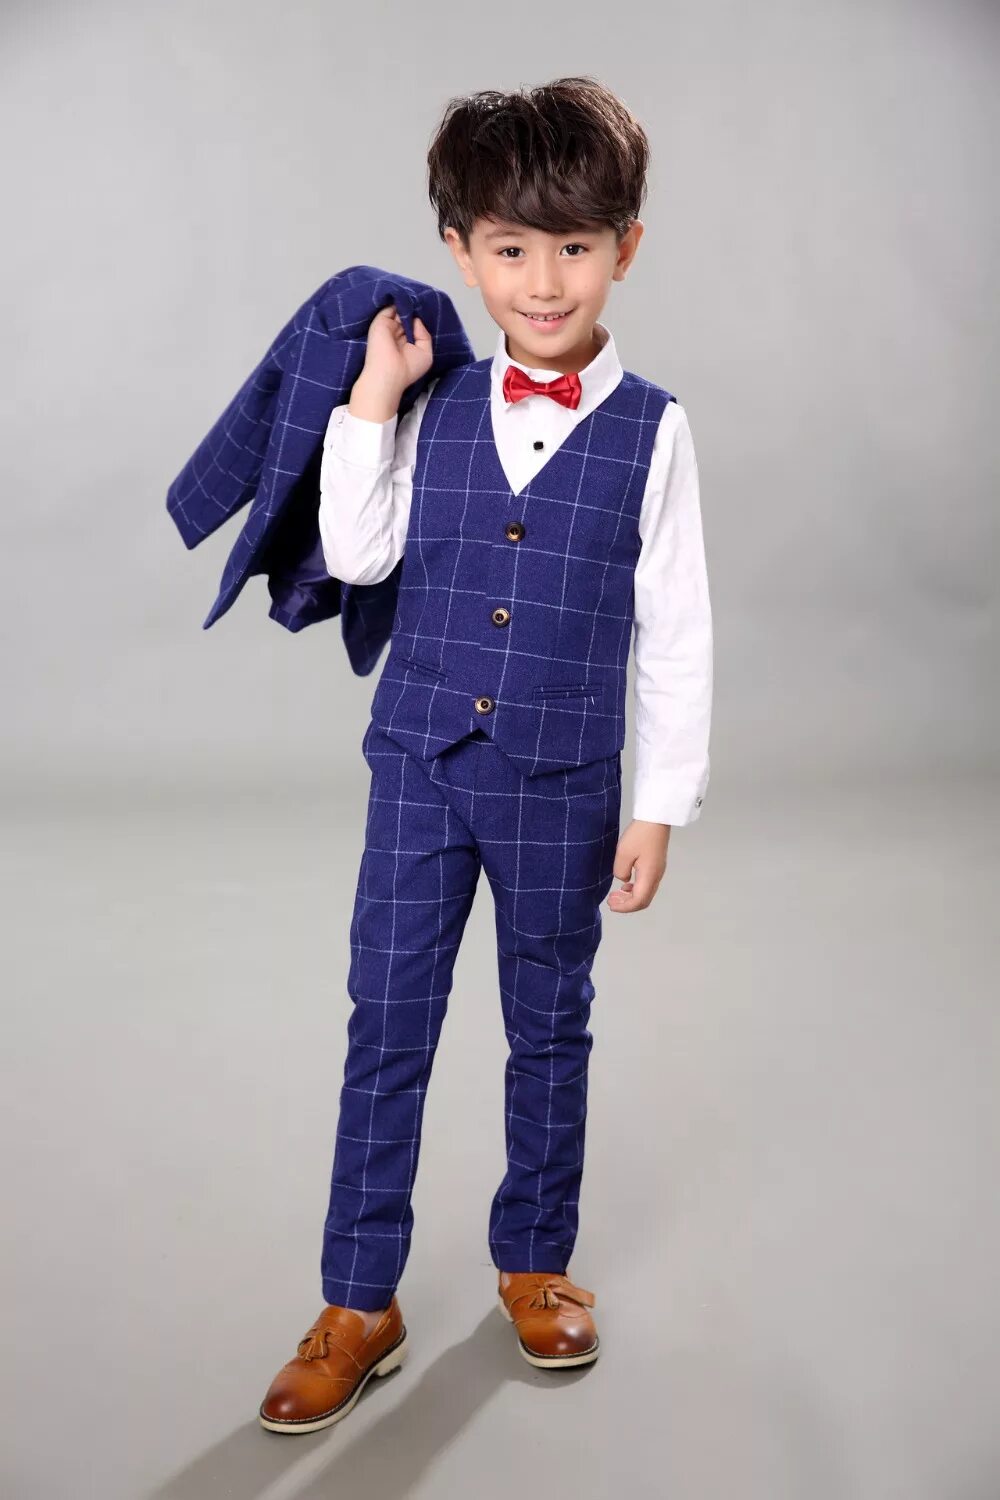 Фото мальчика в костюме. Нарядная одежда для мальчиков. Стильный костюм для мальчика. Праздничный костюм для мальчика. Мальчишки в костюмах.